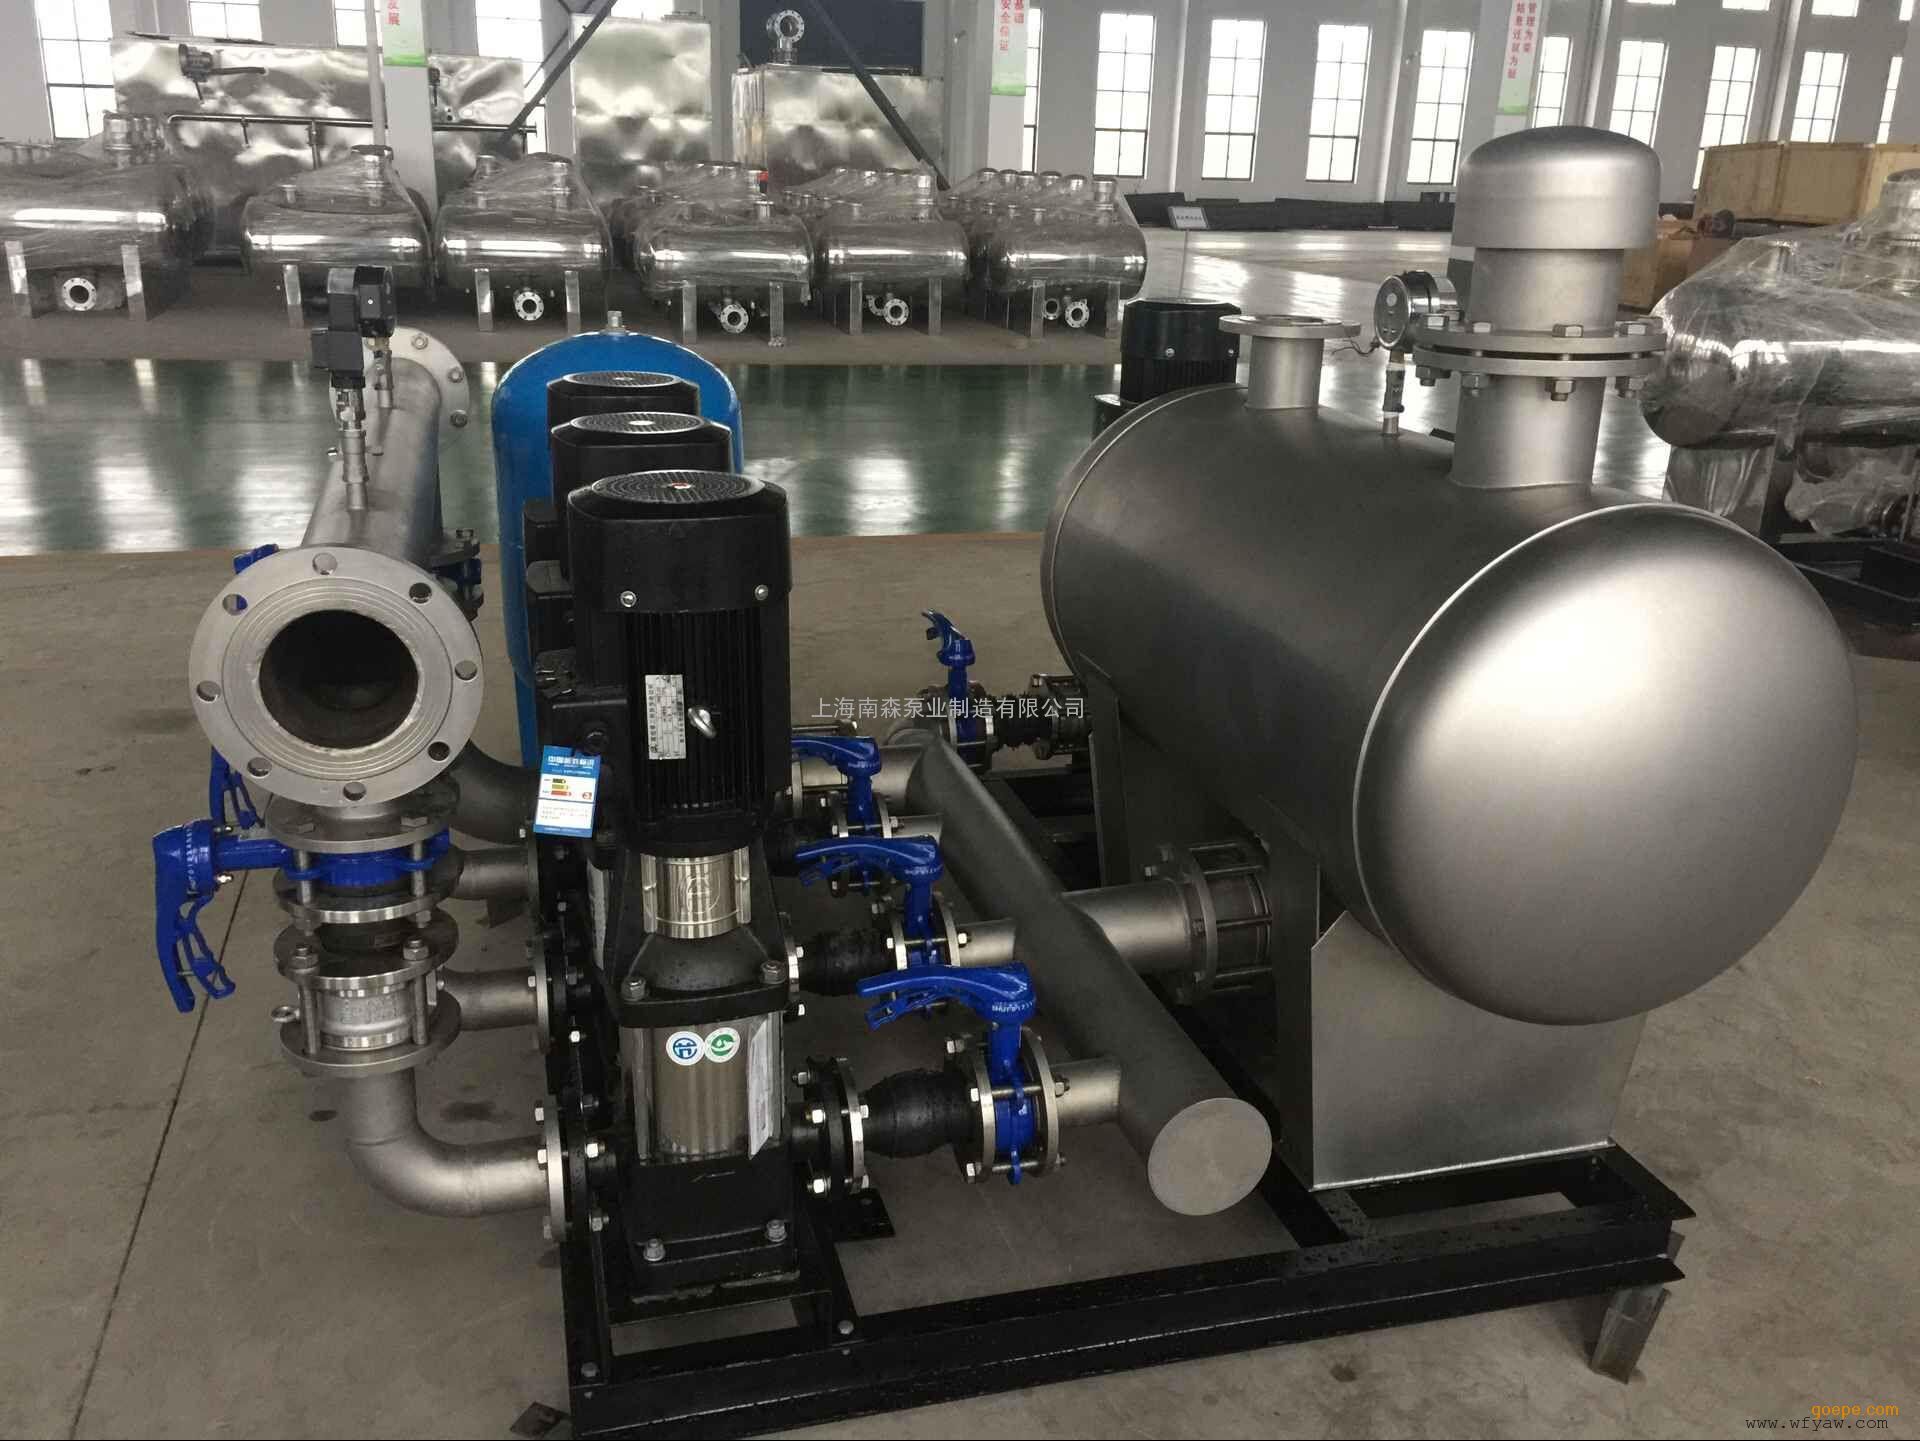 上海卧泉供水设备(上海卧泉泵业有限公司 概况)